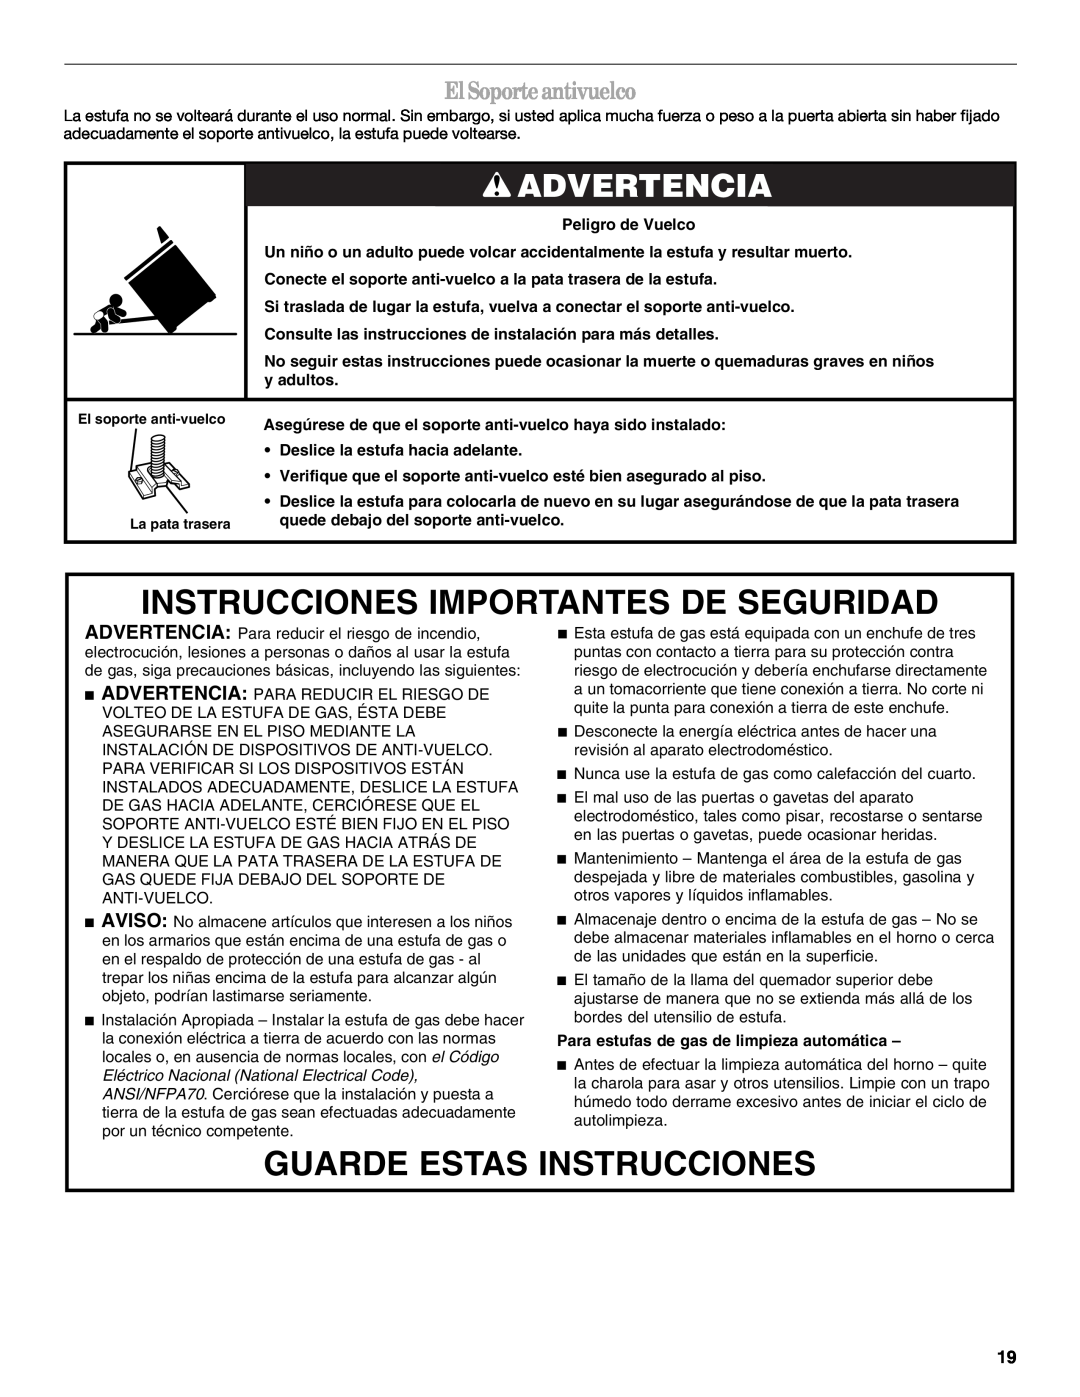 Whirlpool SF315PEPB3 manual Instrucciones Importantes De Seguridad, Guarde Estas Instrucciones, Advertencia 